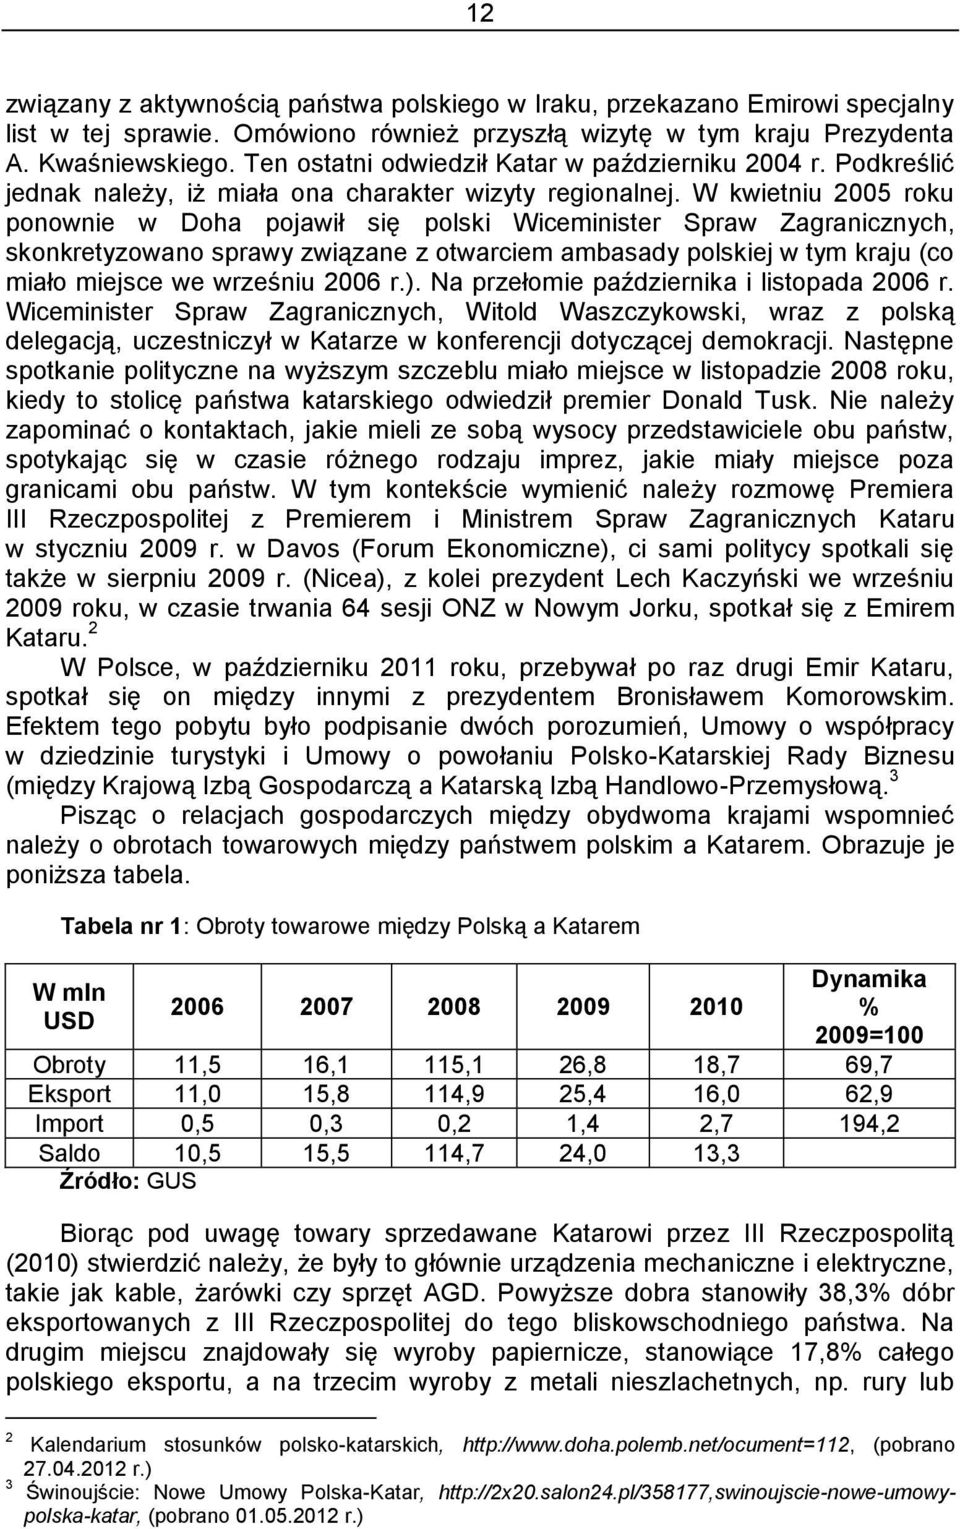 W kwietniu 2005 roku ponownie w Doha pojawił się polski Wiceminister Spraw Zagranicznych, skonkretyzowano sprawy związane z otwarciem ambasady polskiej w tym kraju (co miało miejsce we wrześniu 2006